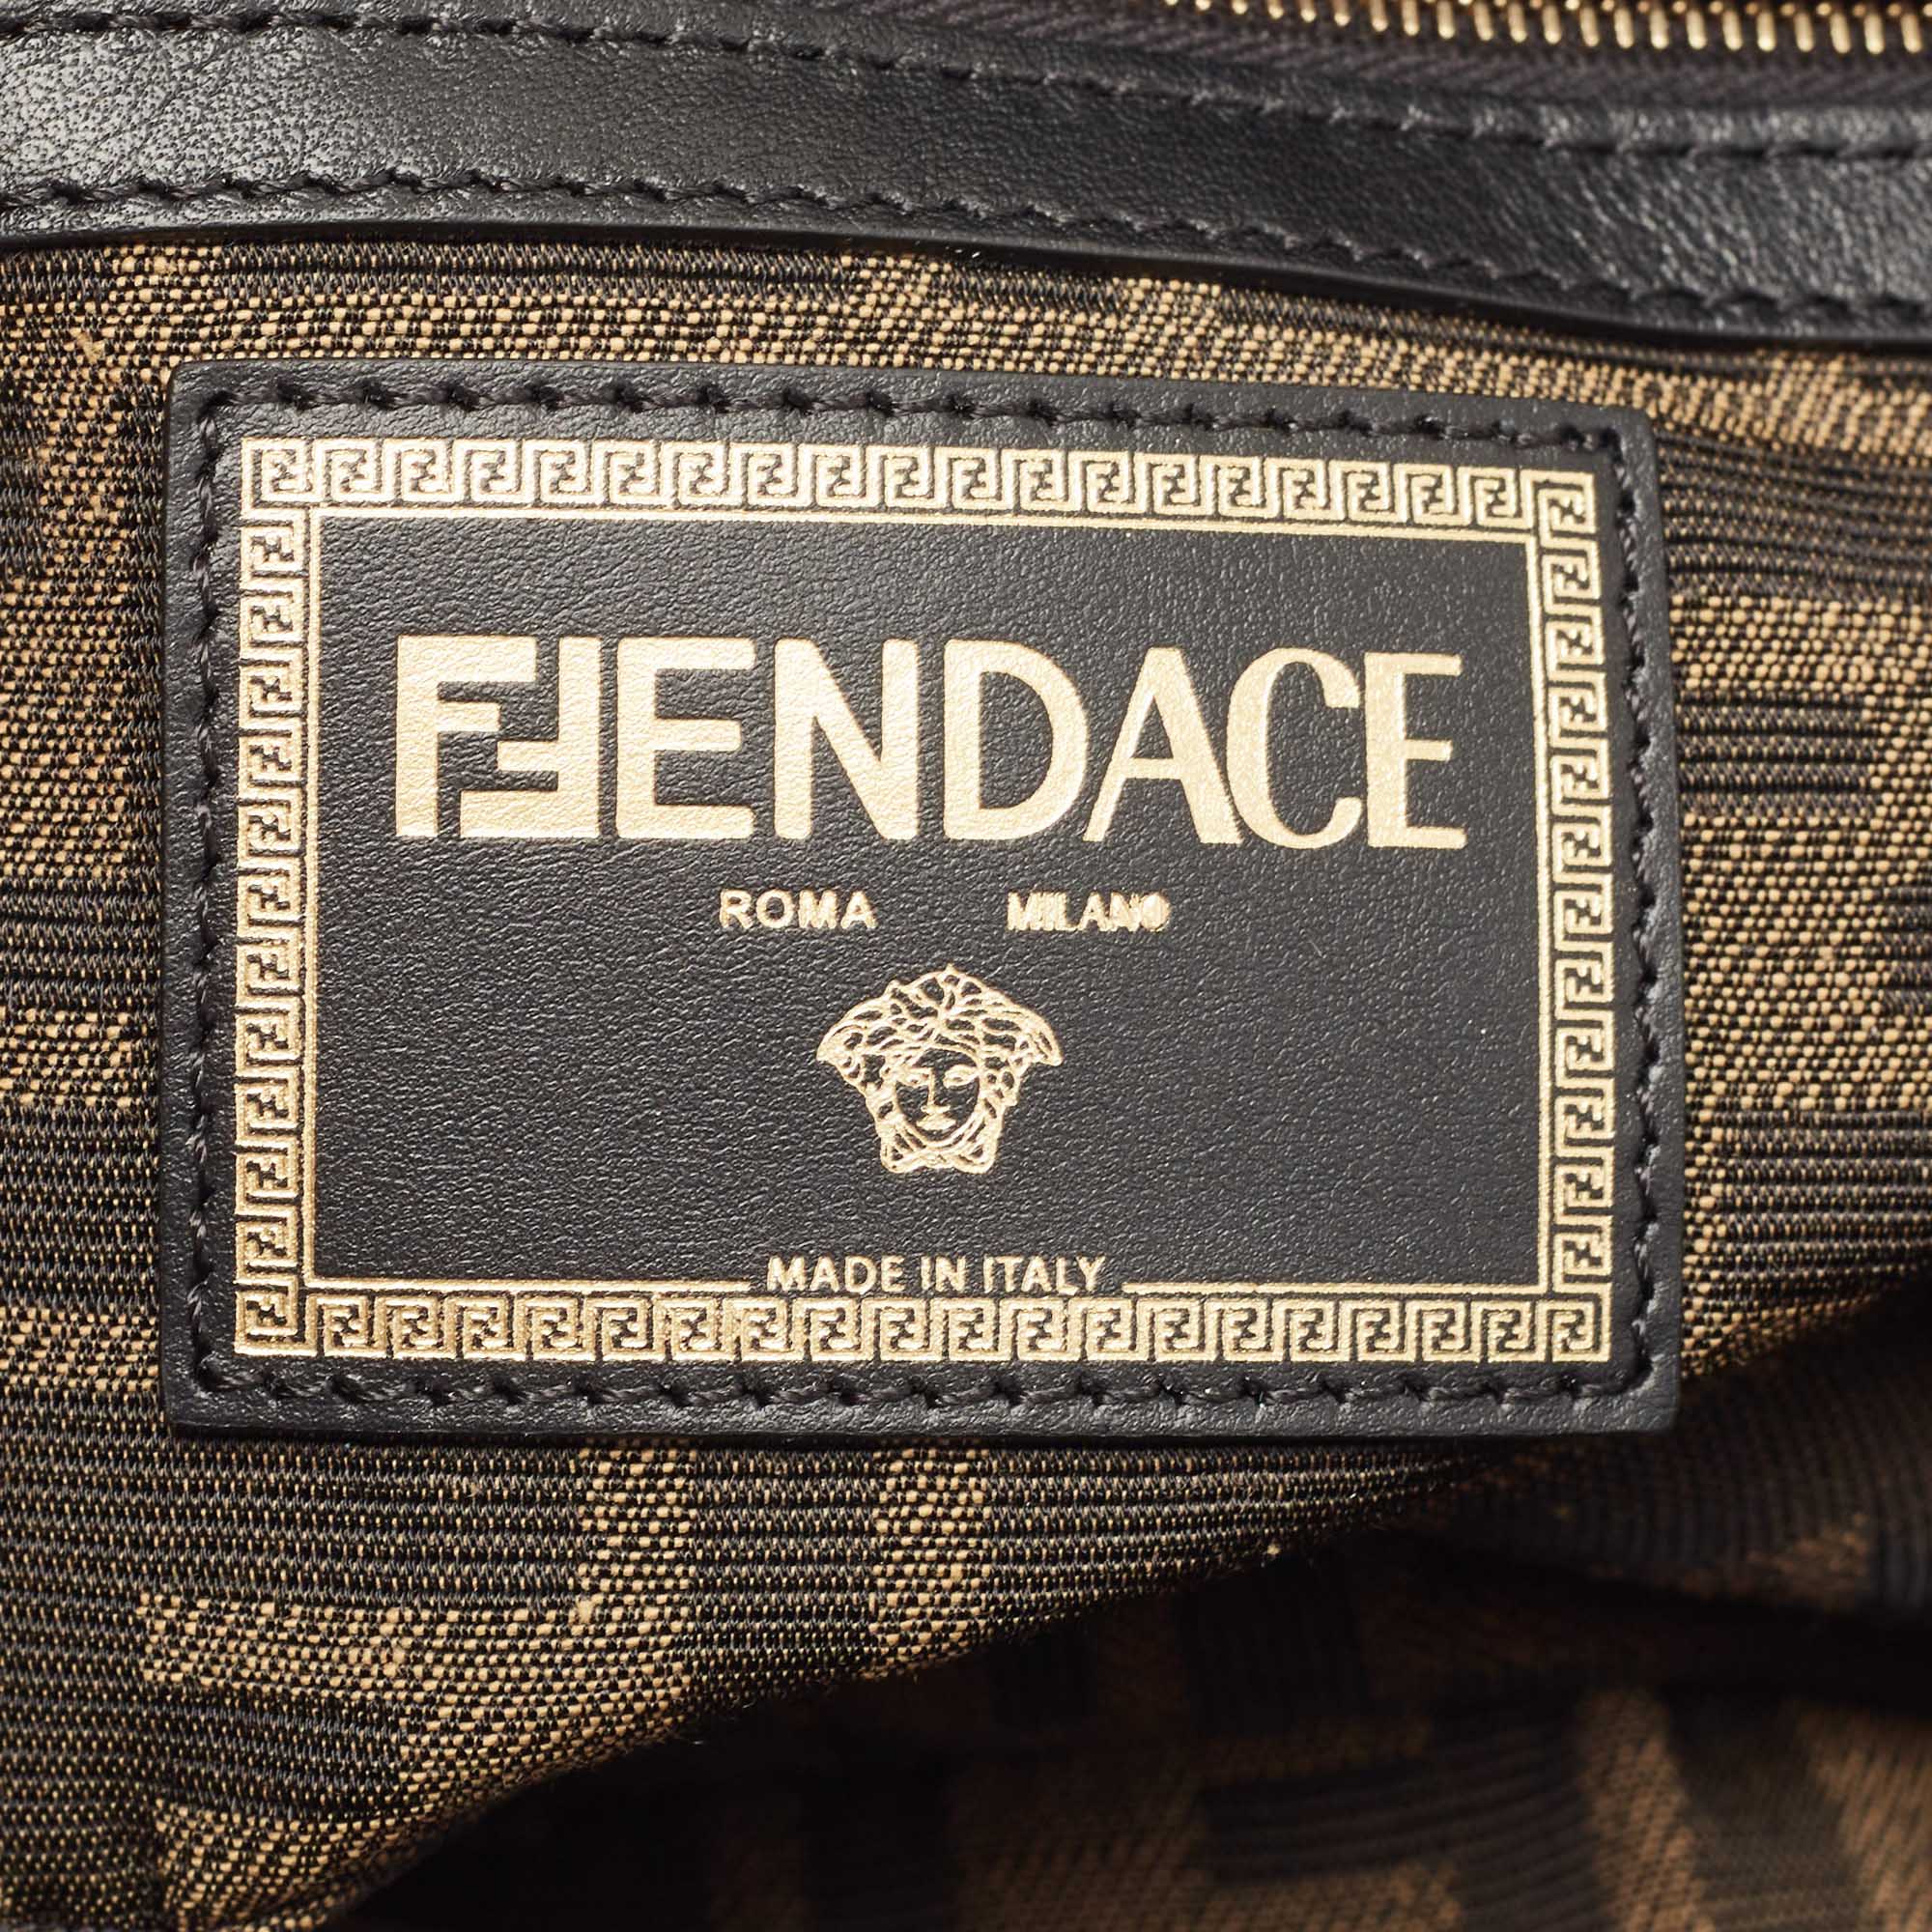 Fendi x Versace Fendace Blue/Black Denim and Leather Fendace Patchwork  Baguette Bag Fendi x Versace | The Luxury Closet